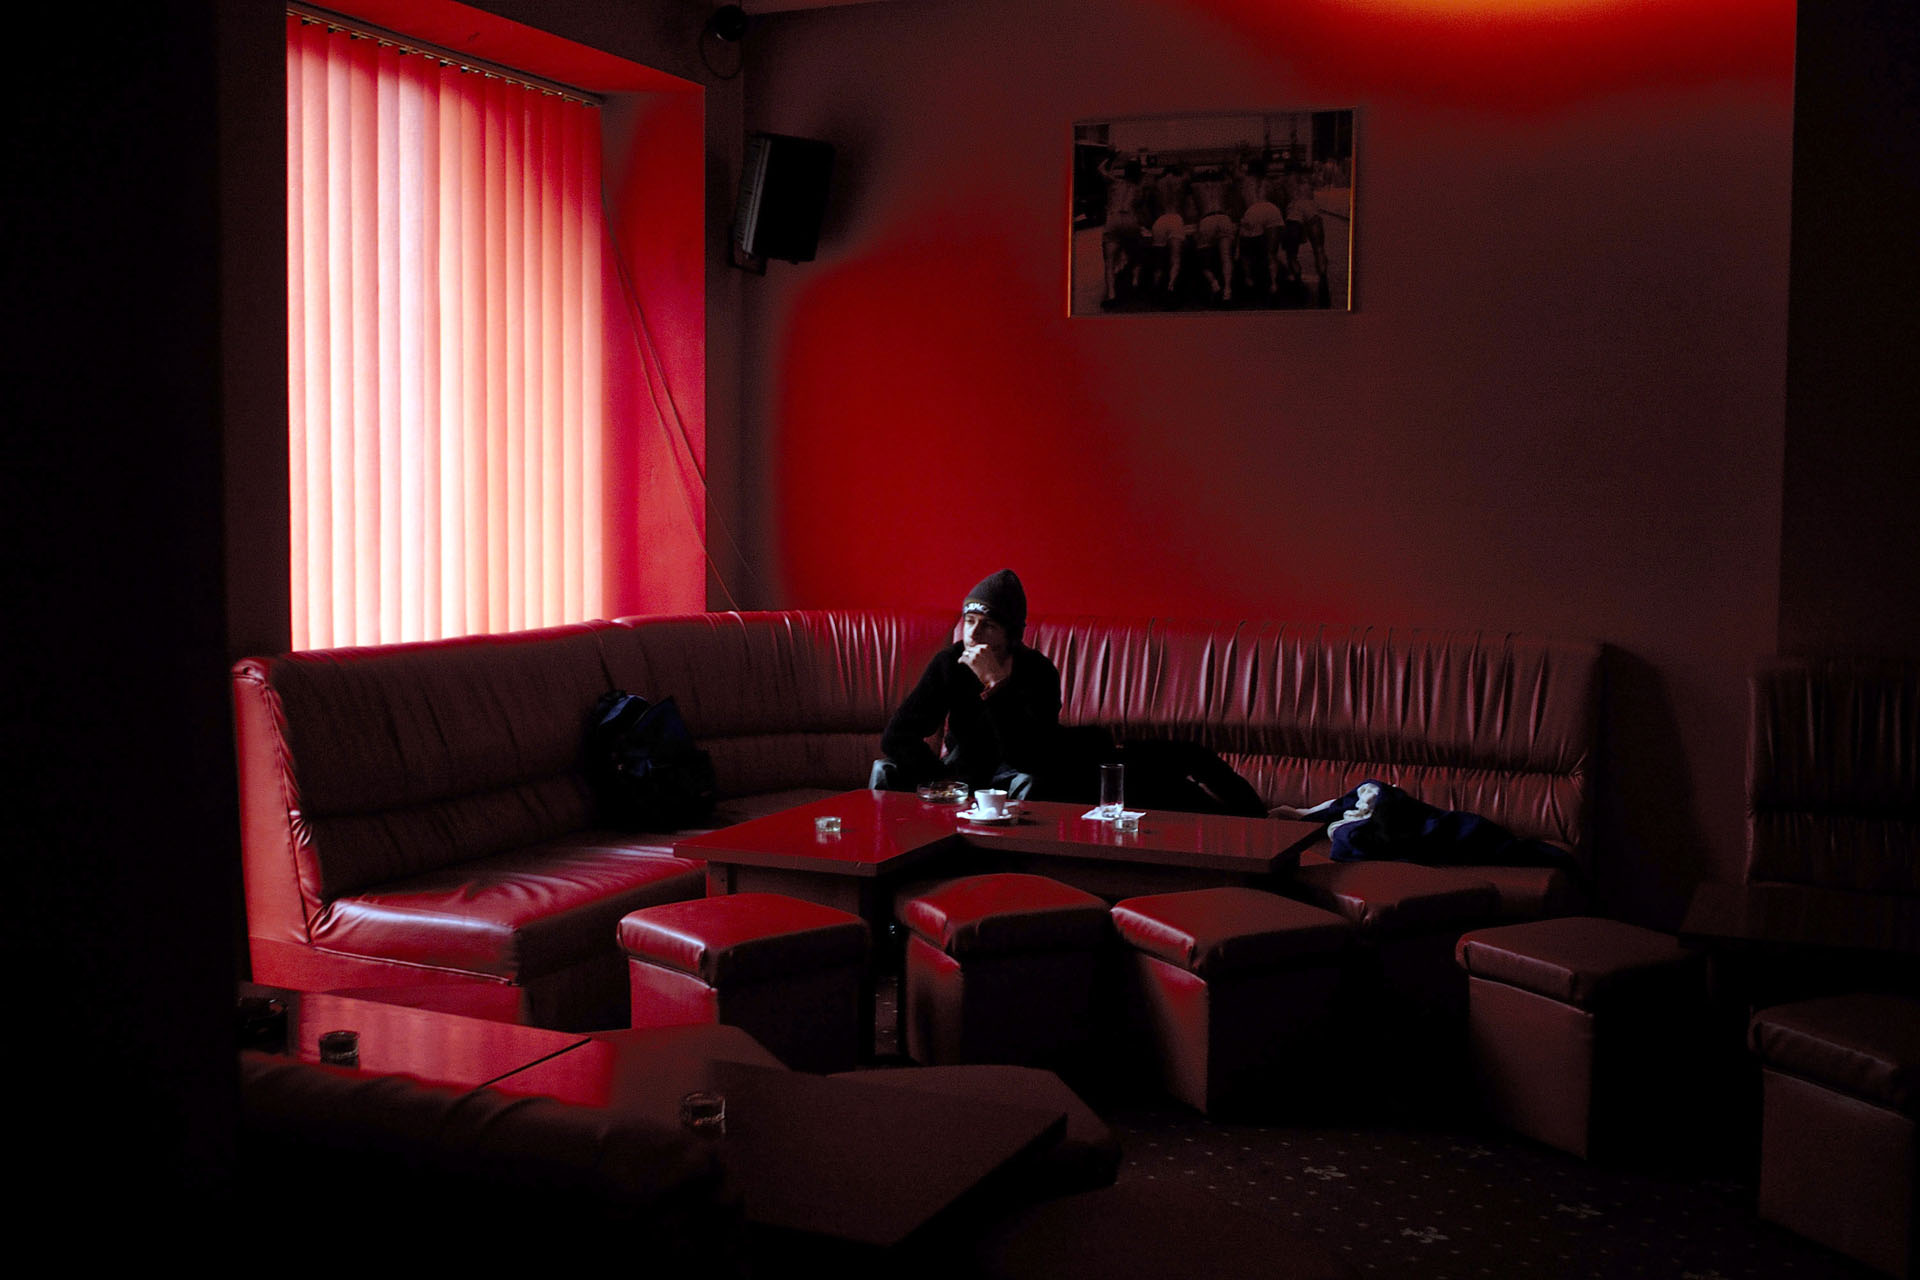  Le "Red Heart", seul bar/club de la ville à afficher le drapeau arc en ciel. Ouvert de jour comme de nuit.  *** Local Caption *** Bucarest, Etre homosexuel, Janvier 2006 